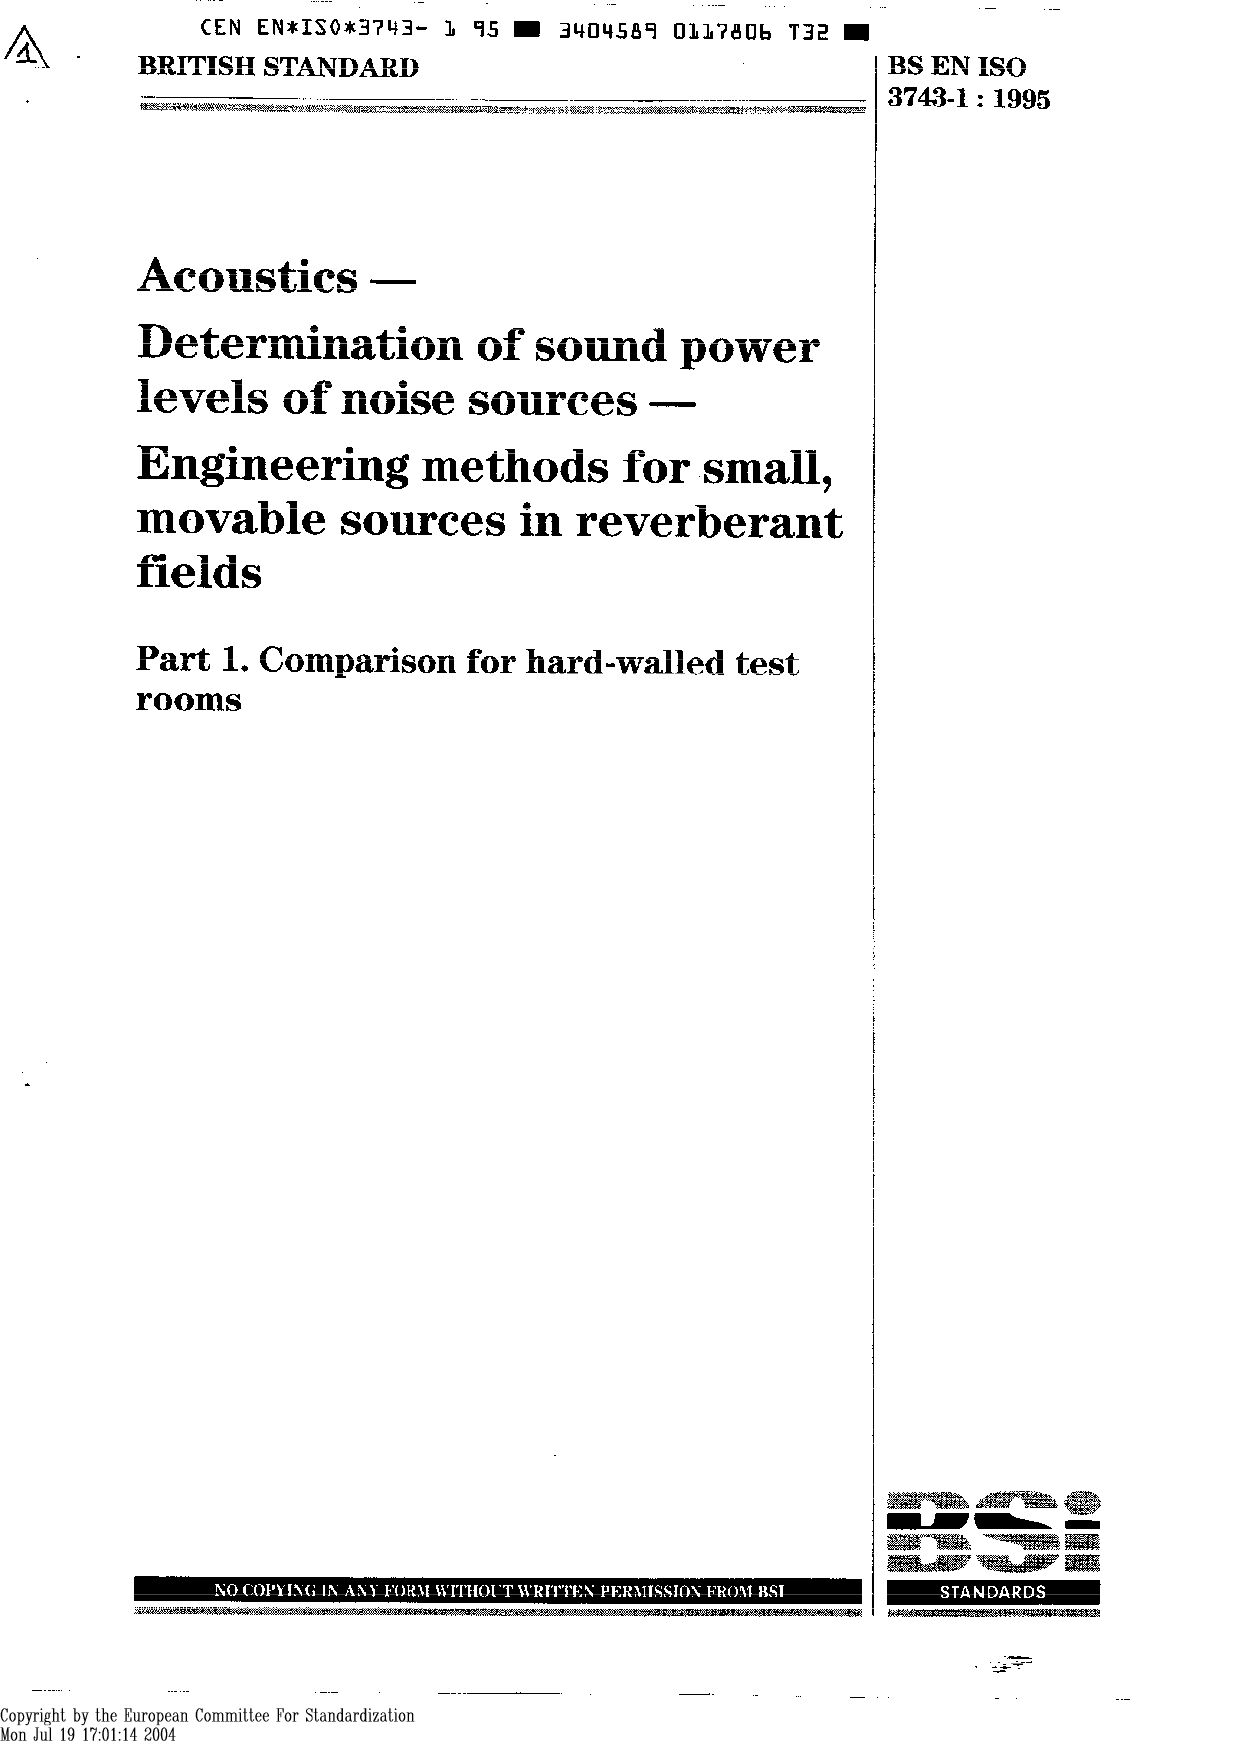 EN ISO 3743-1-1995